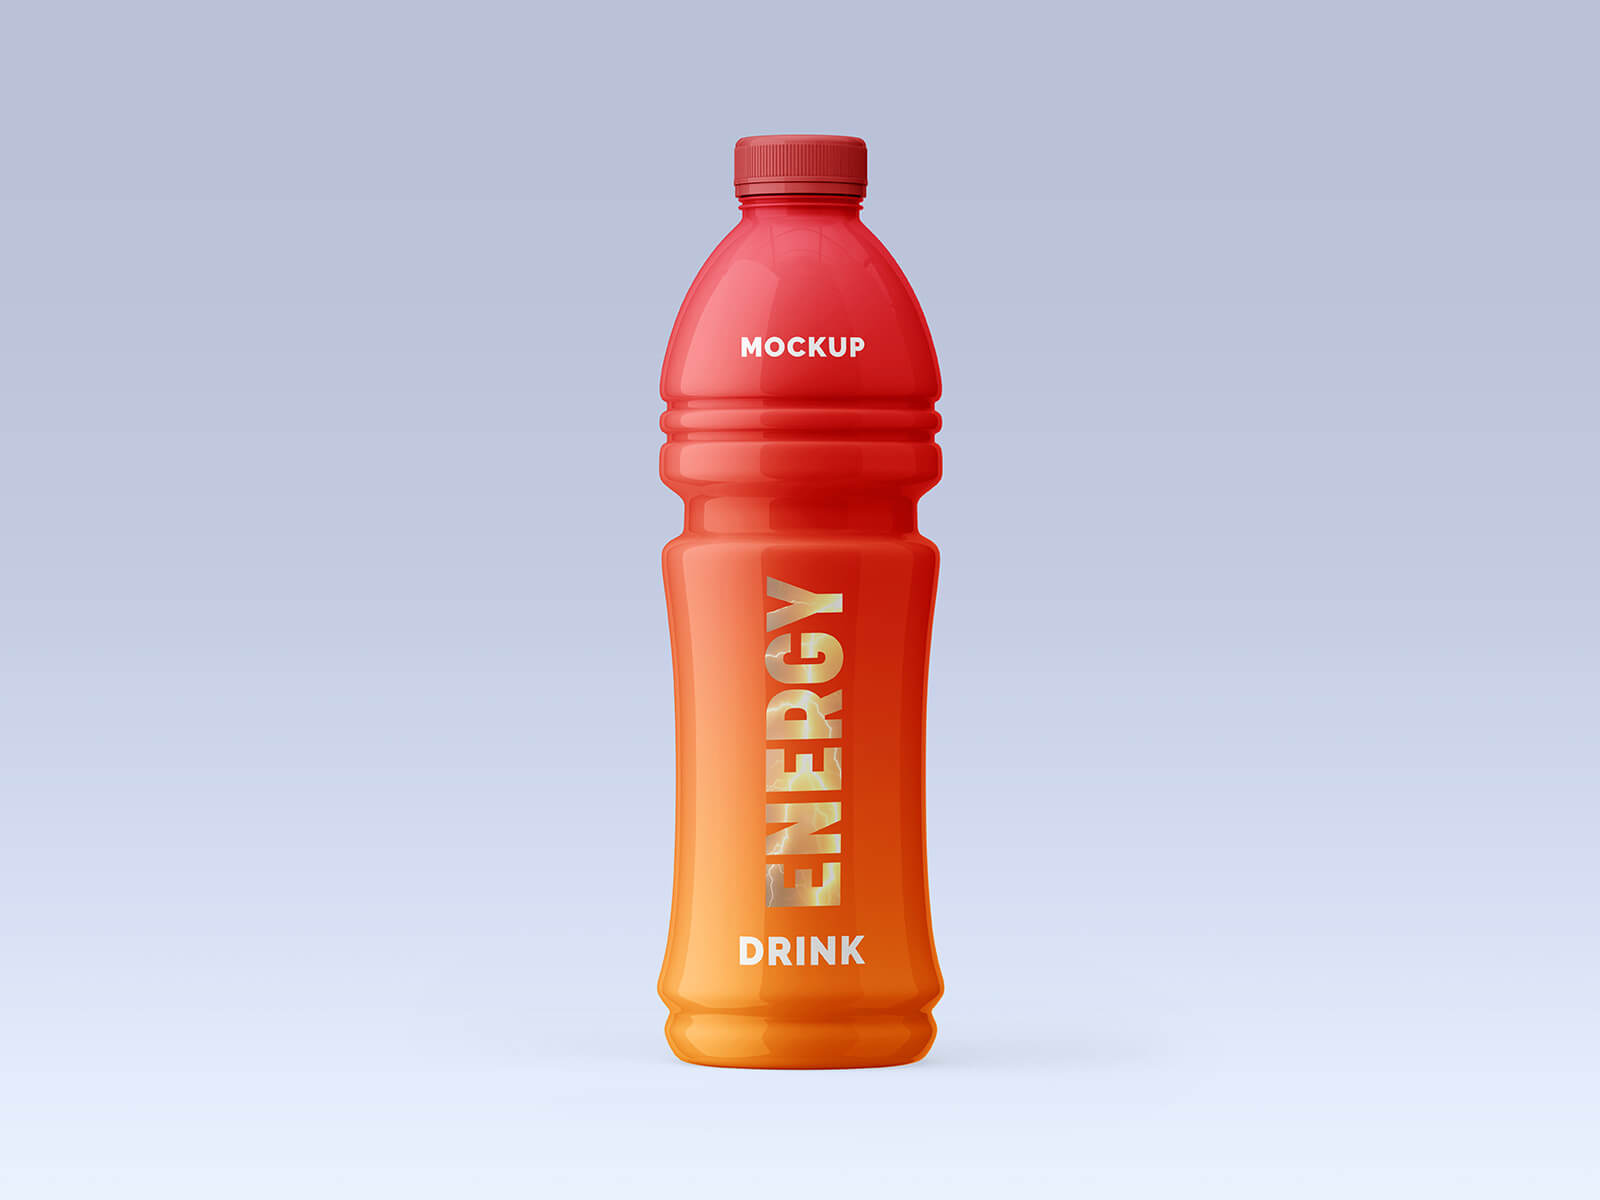 Питание напитков / энергетический напиток пластиковый макет бутылки